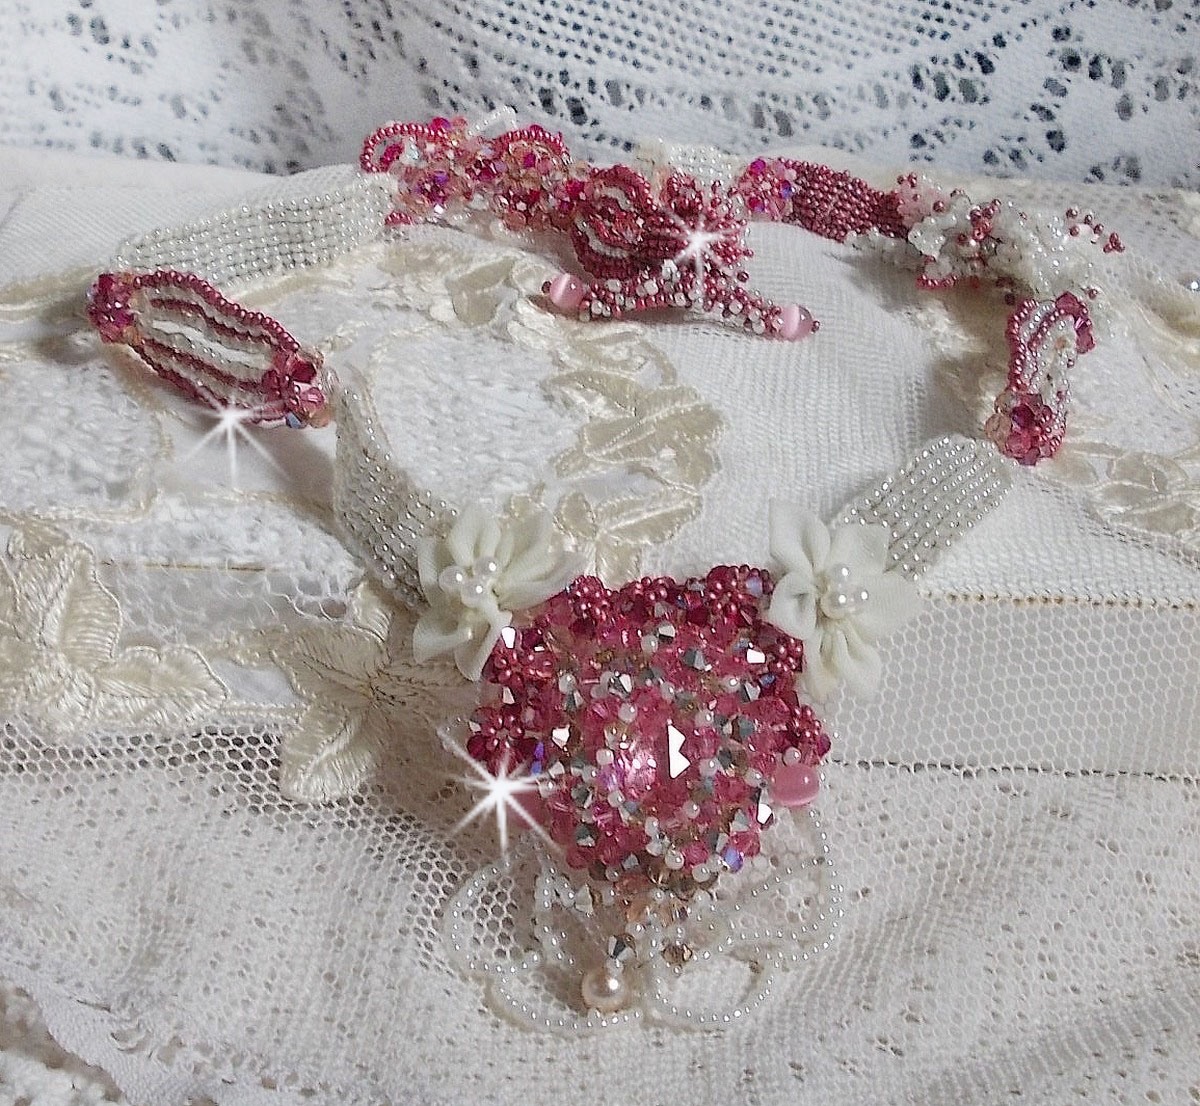 Collier Rose des Sables brodé avec des rocailles roses, blanc nacré et des cristaux de Swarovski